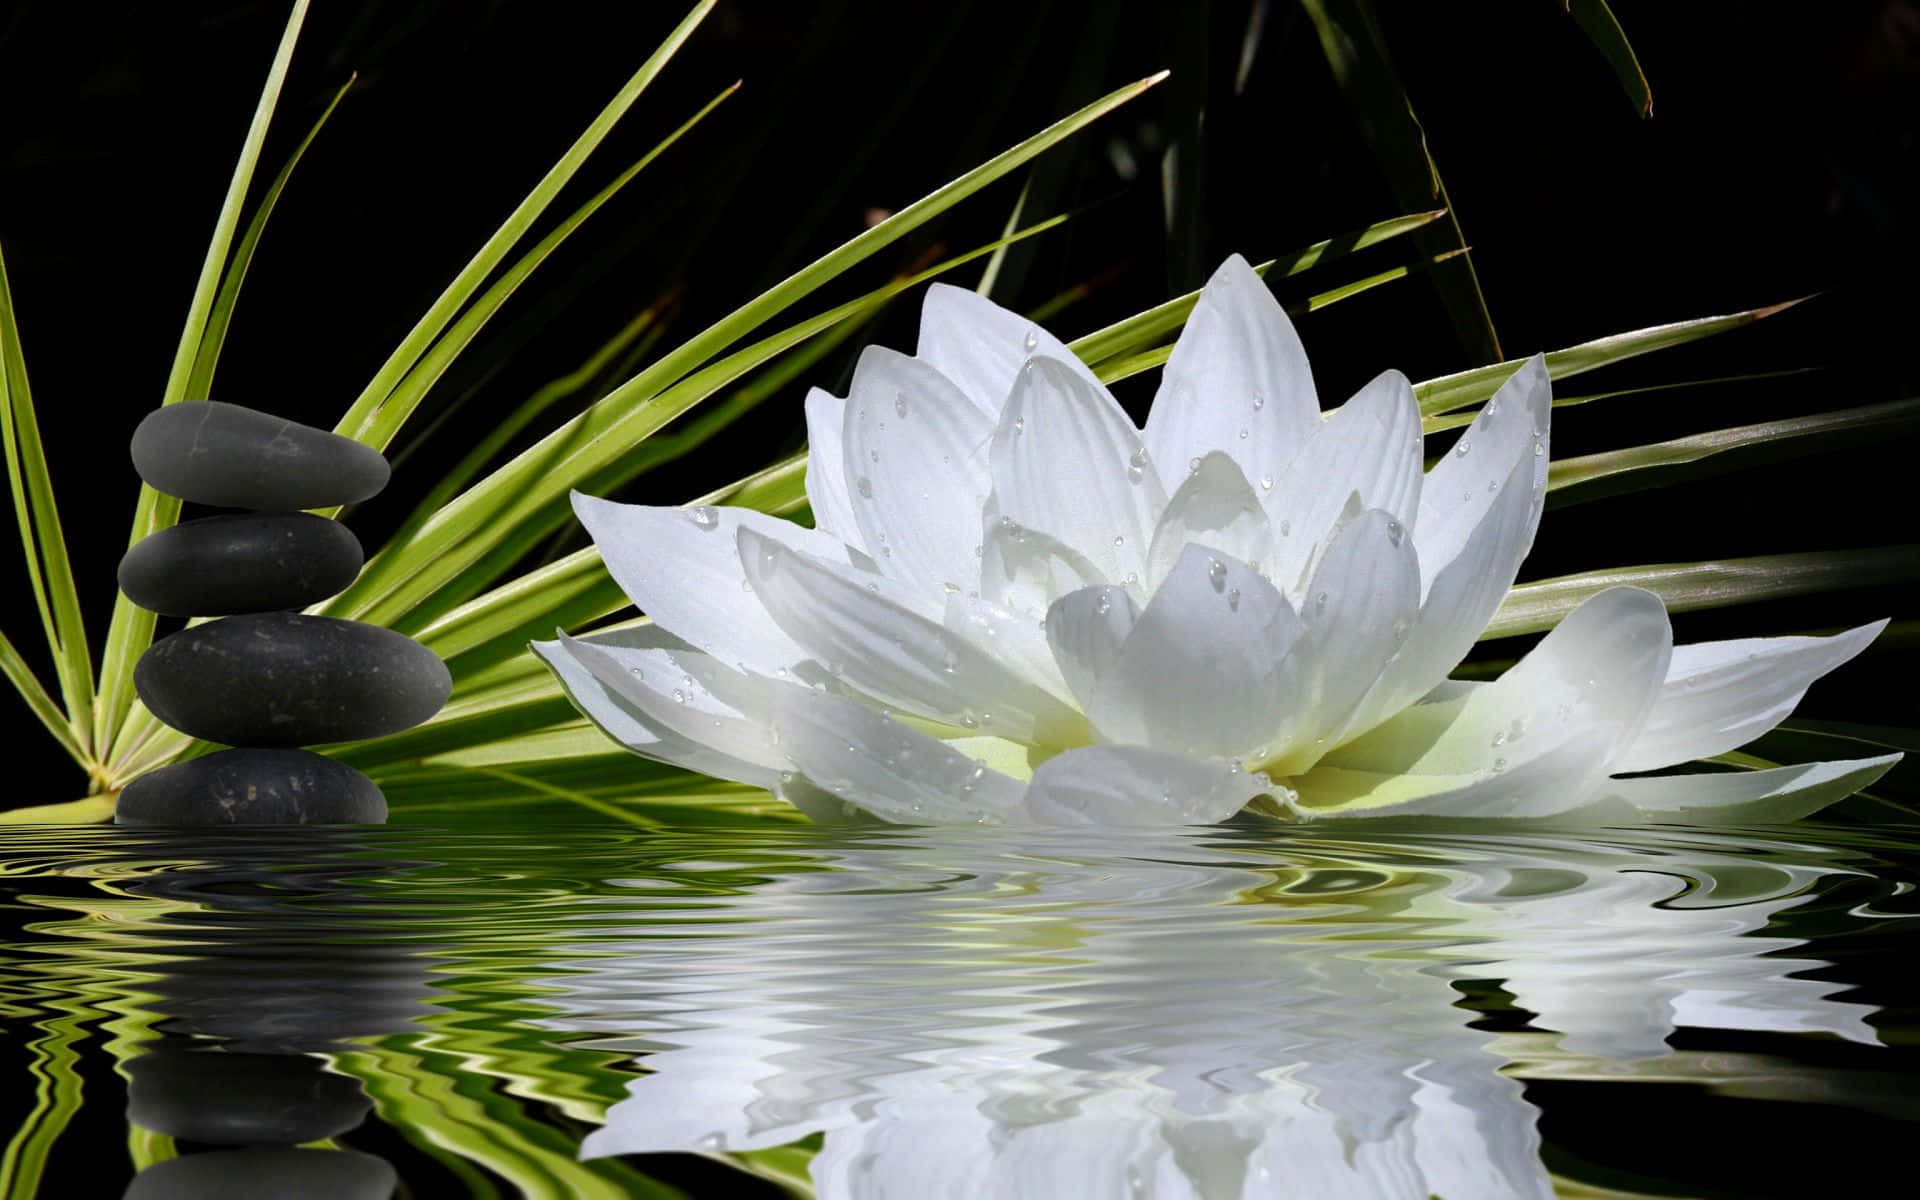 Serene Lotus Flower Blooming on Calm Waters